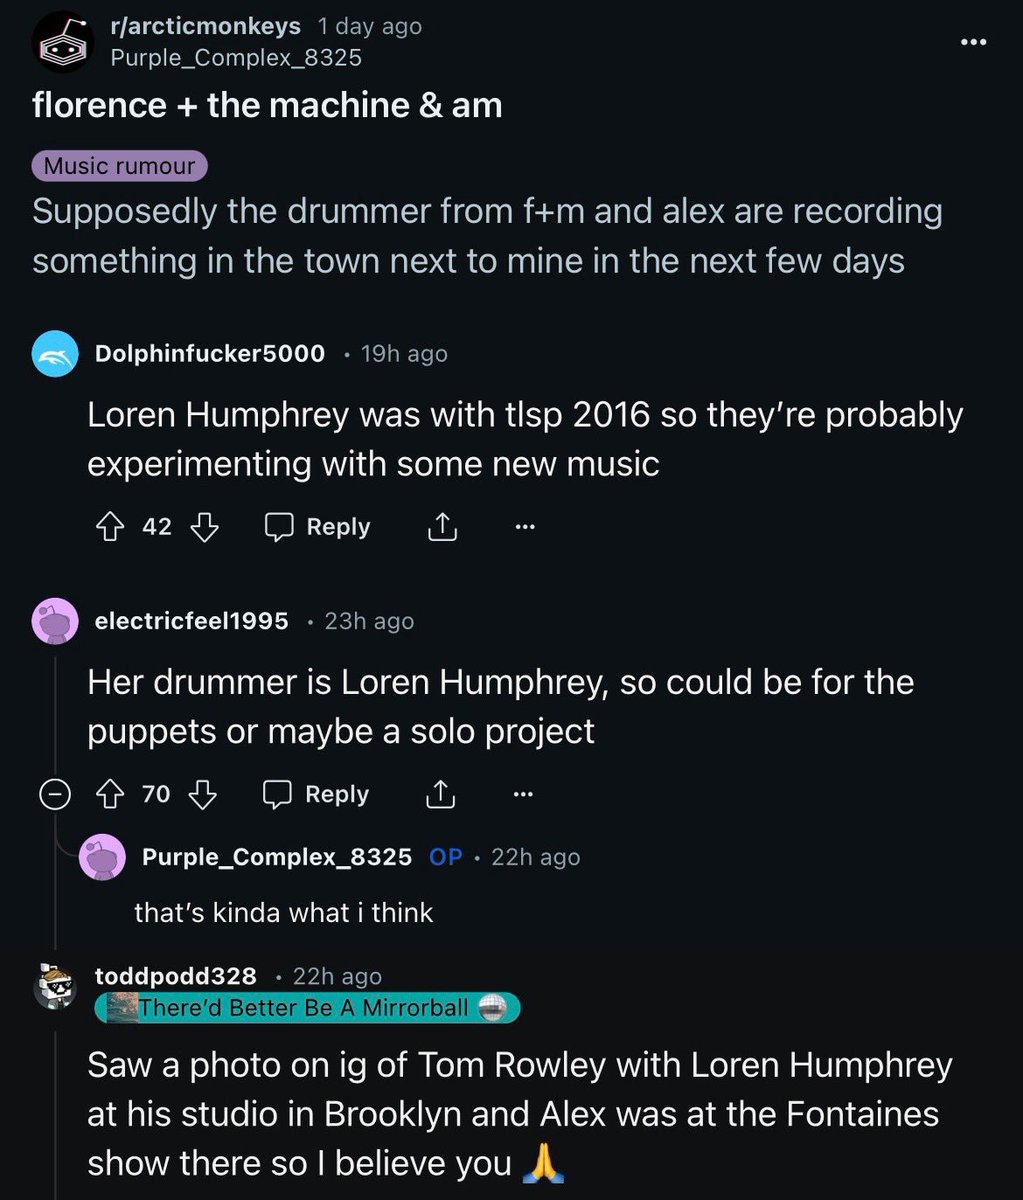 🚨 ATENÇÃO! Alex Turner, Tom Rowley (músico de turnê e compositor do Arctic Monkeys) e Loren Humphrey (baterista do The Last Shadow Puppets) foram vistos GRAVANDO em Brooklyn! Há rumores de um projeto entre os artistas há aproximadamente um mês via Reddit e @RatioMonkeys